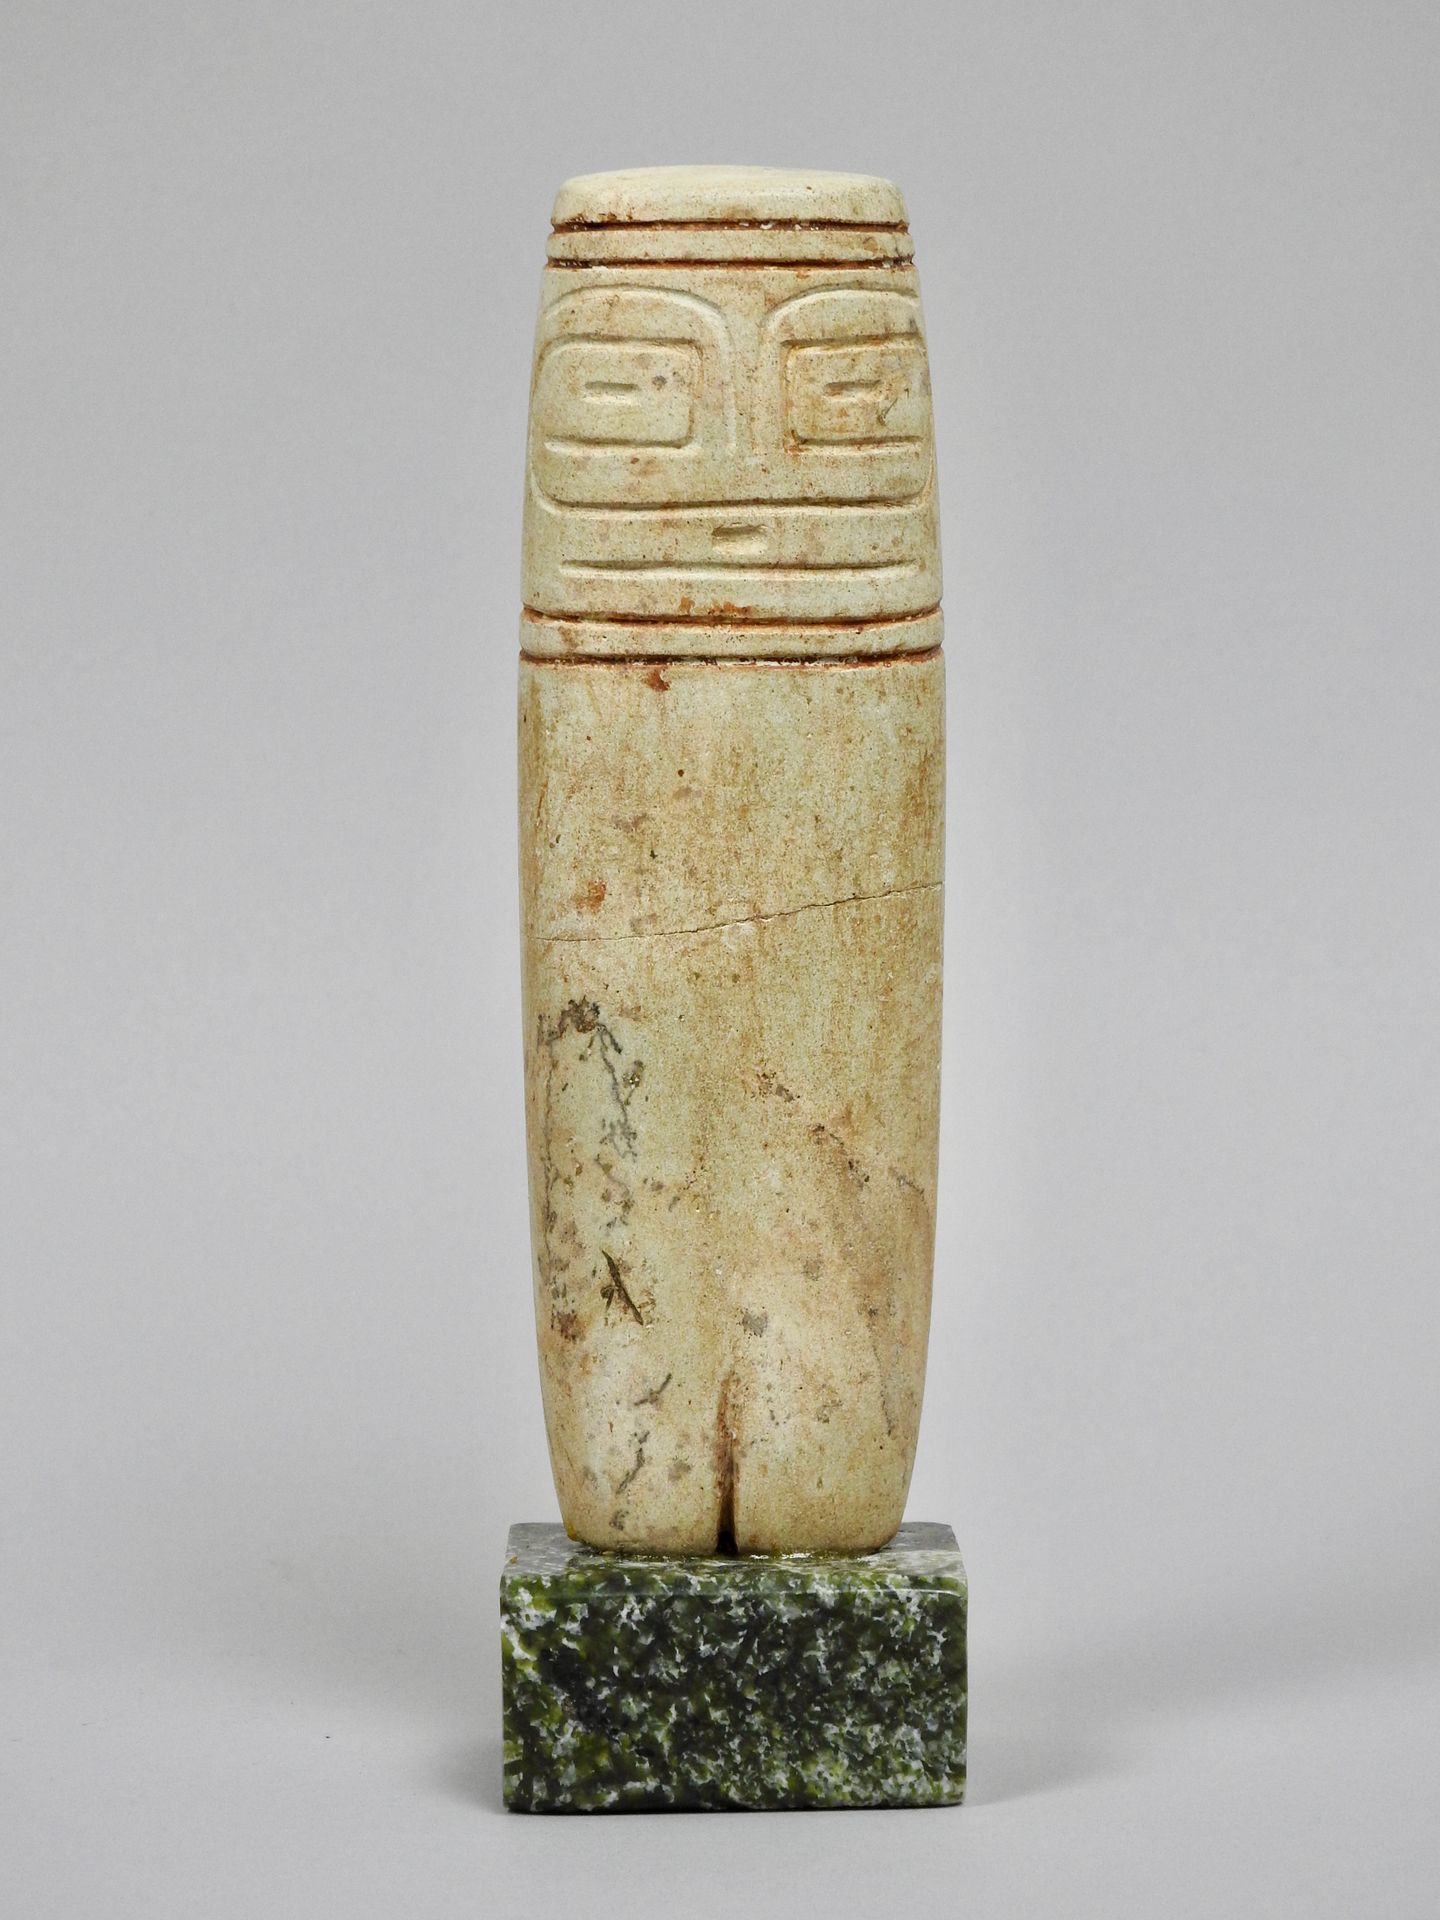 Null Cultura del Palmar

Hacha ídolo diosa madre

Piedra tallada con líneas esqu&hellip;